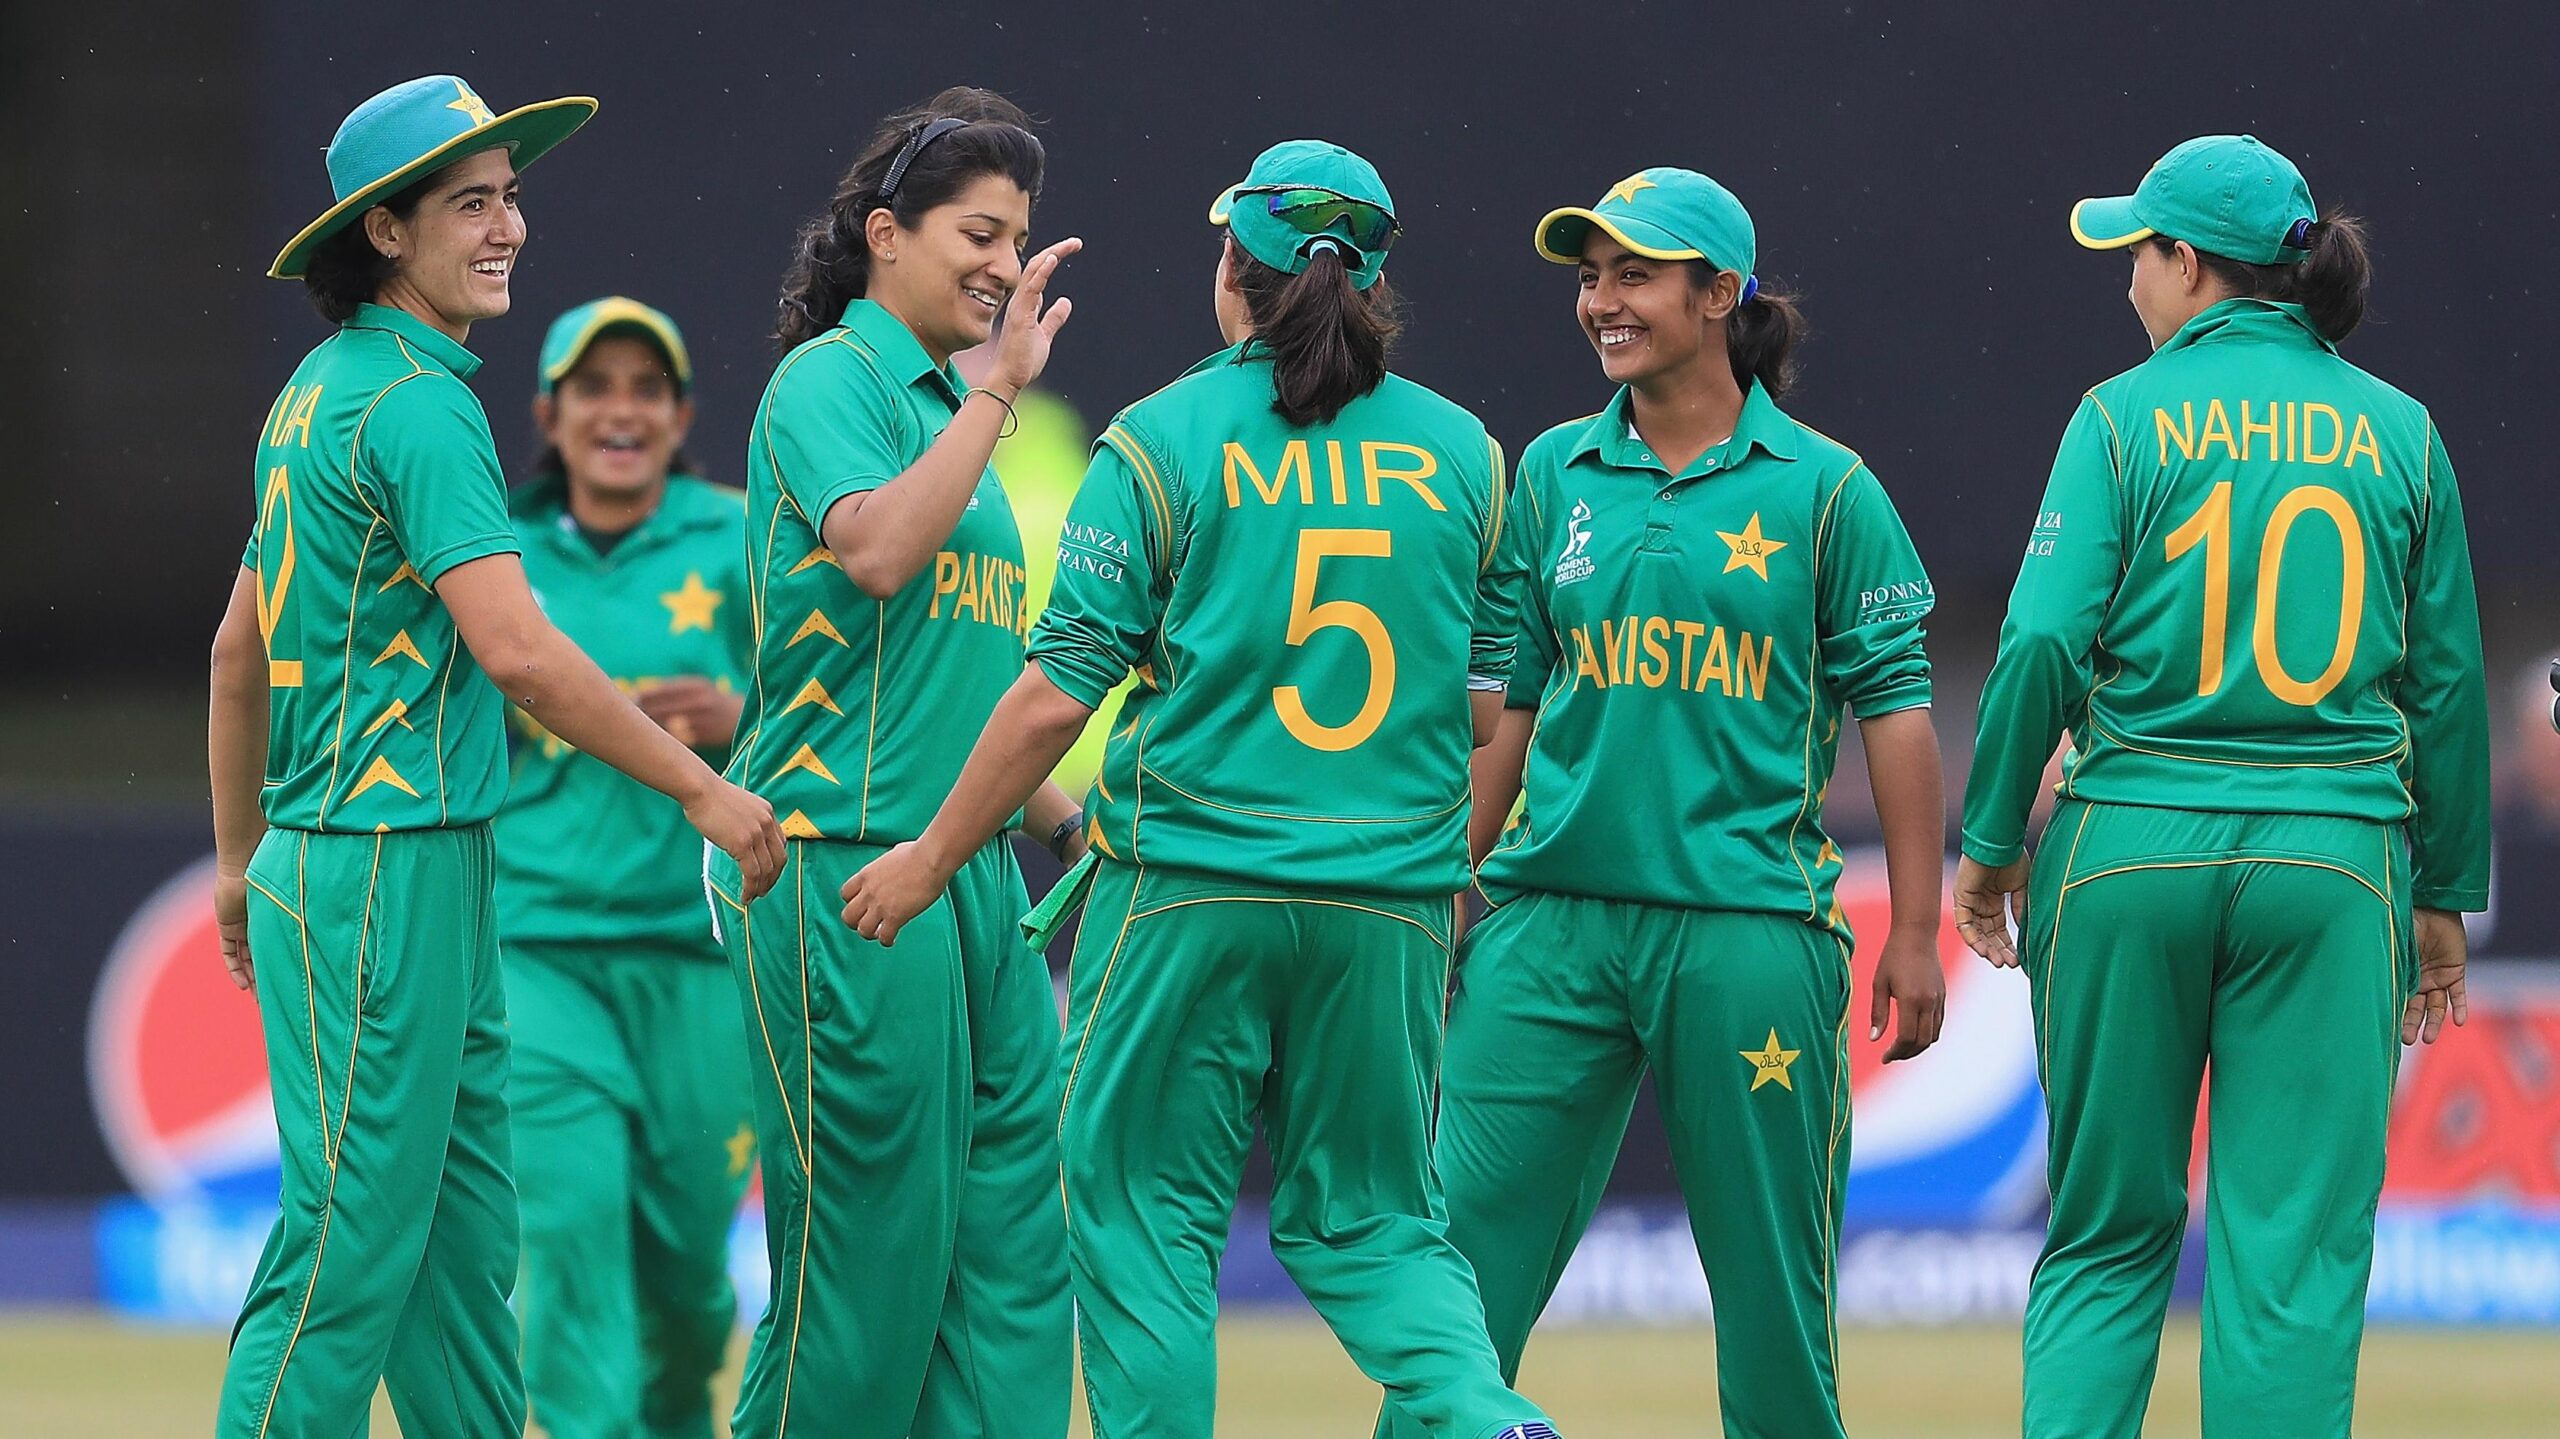 Pakistan Women's Cricket Team